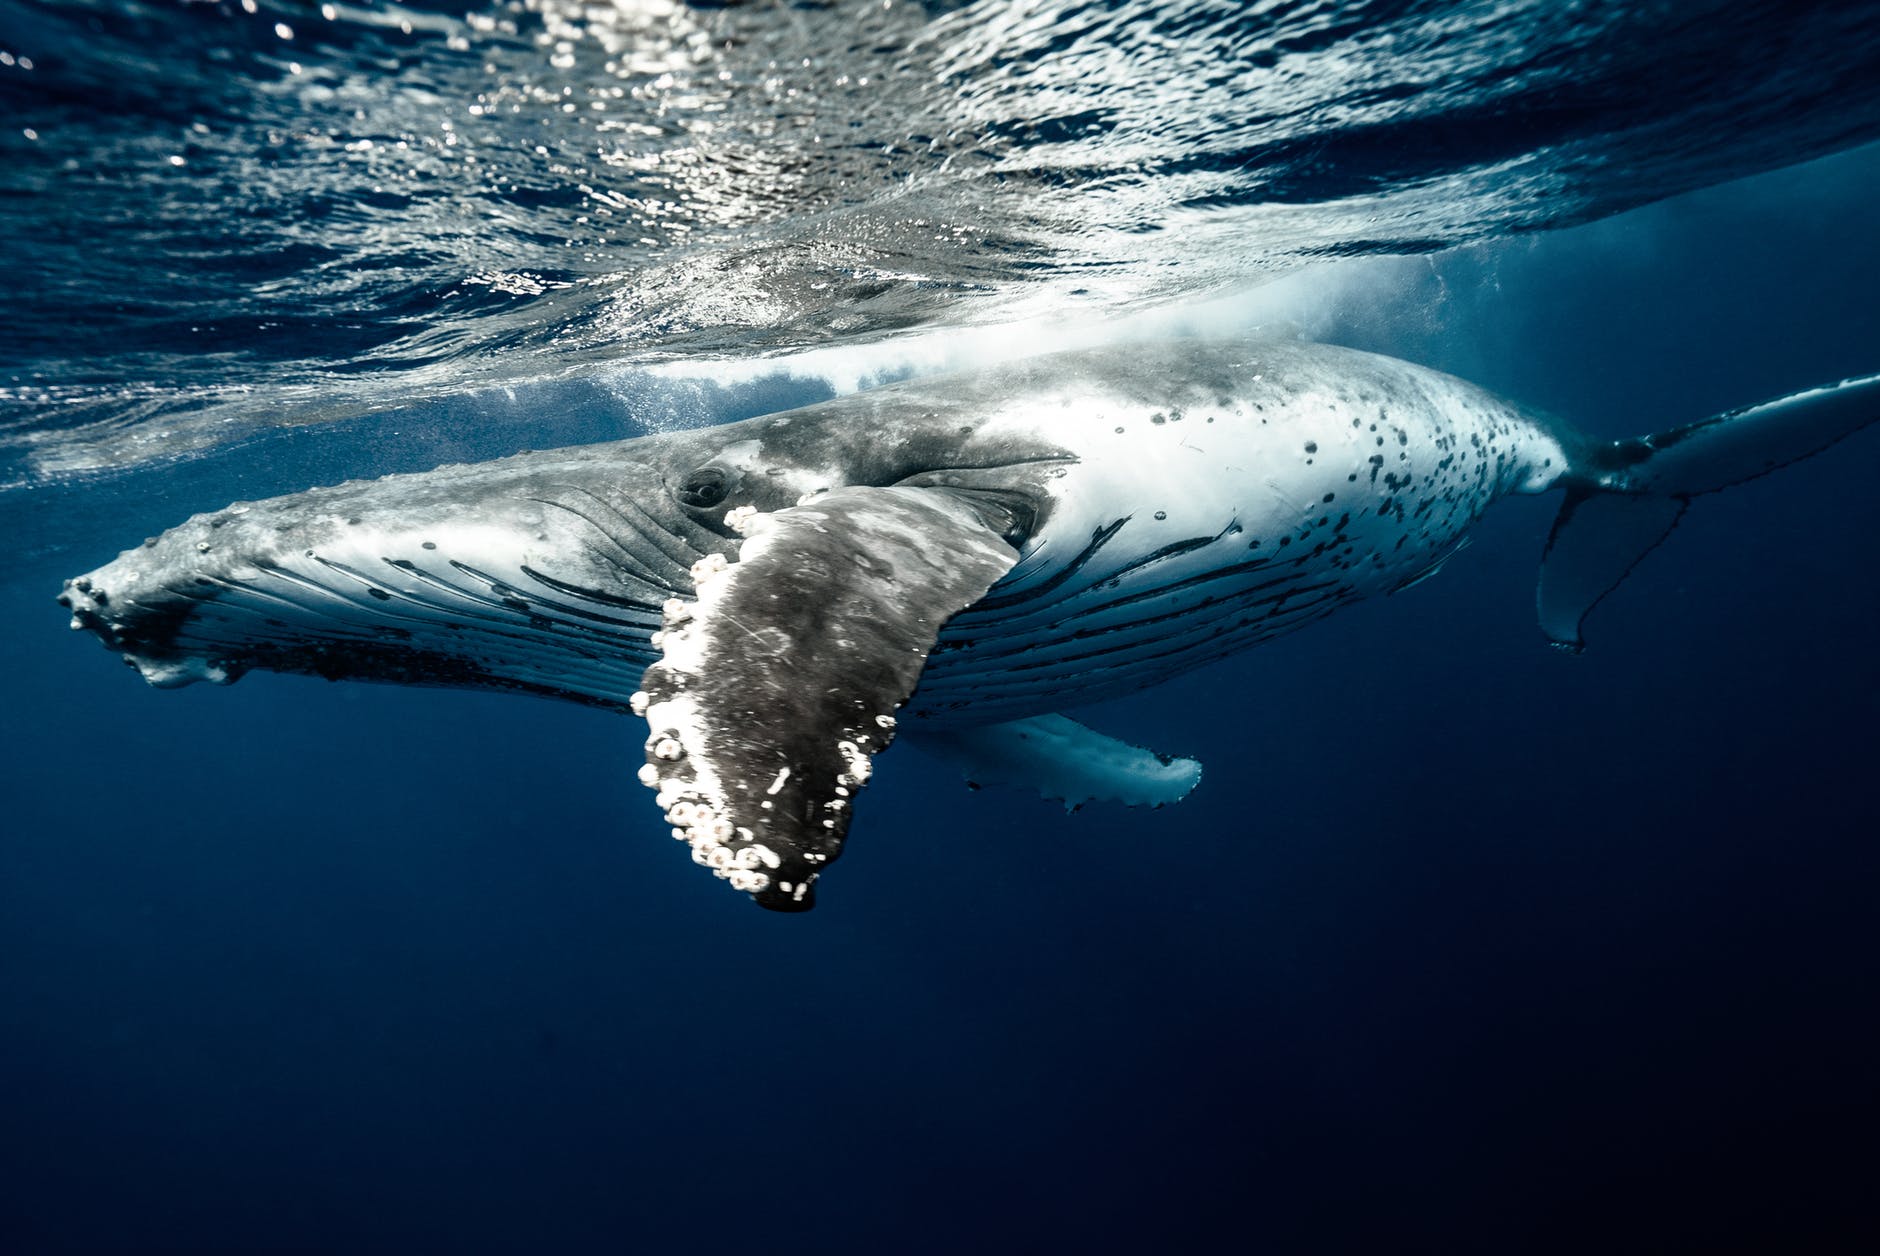 Ook walvissen kwetsbaar voor dodelijkste roofdier in zee: plastic